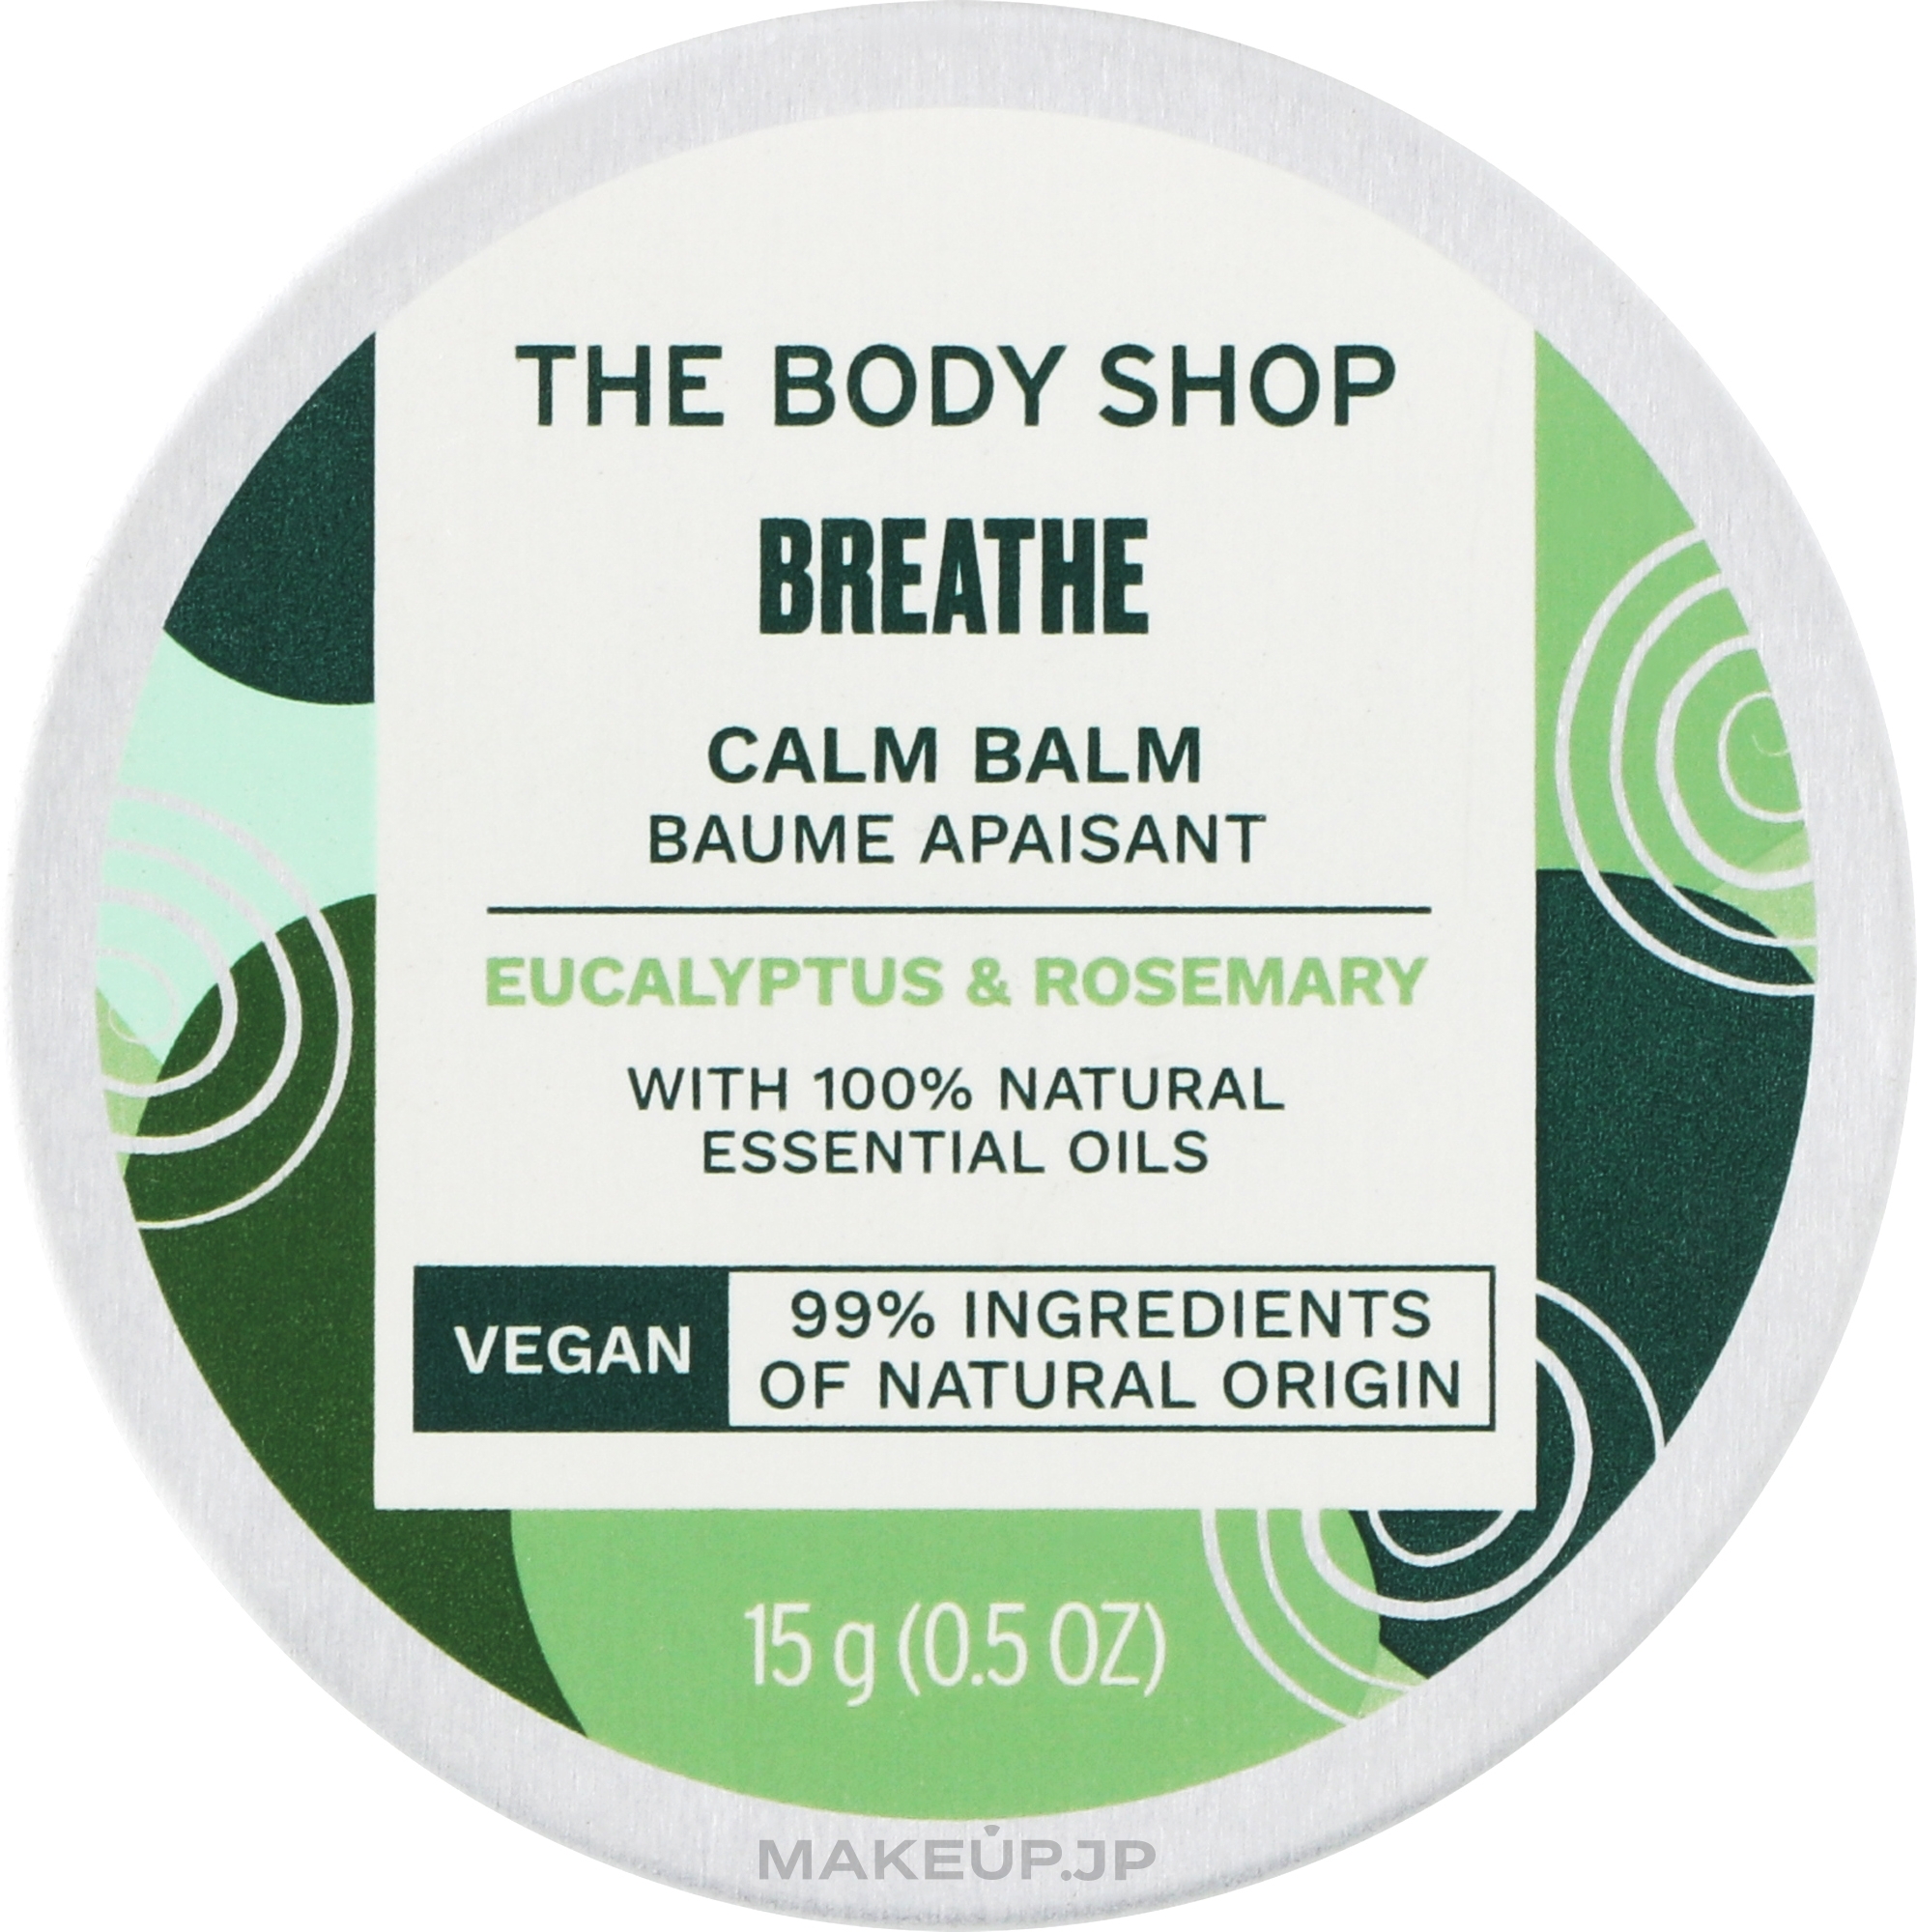 Breathe Calm Balm - The Body Shop Breathe Calm Balm — photo 15 g